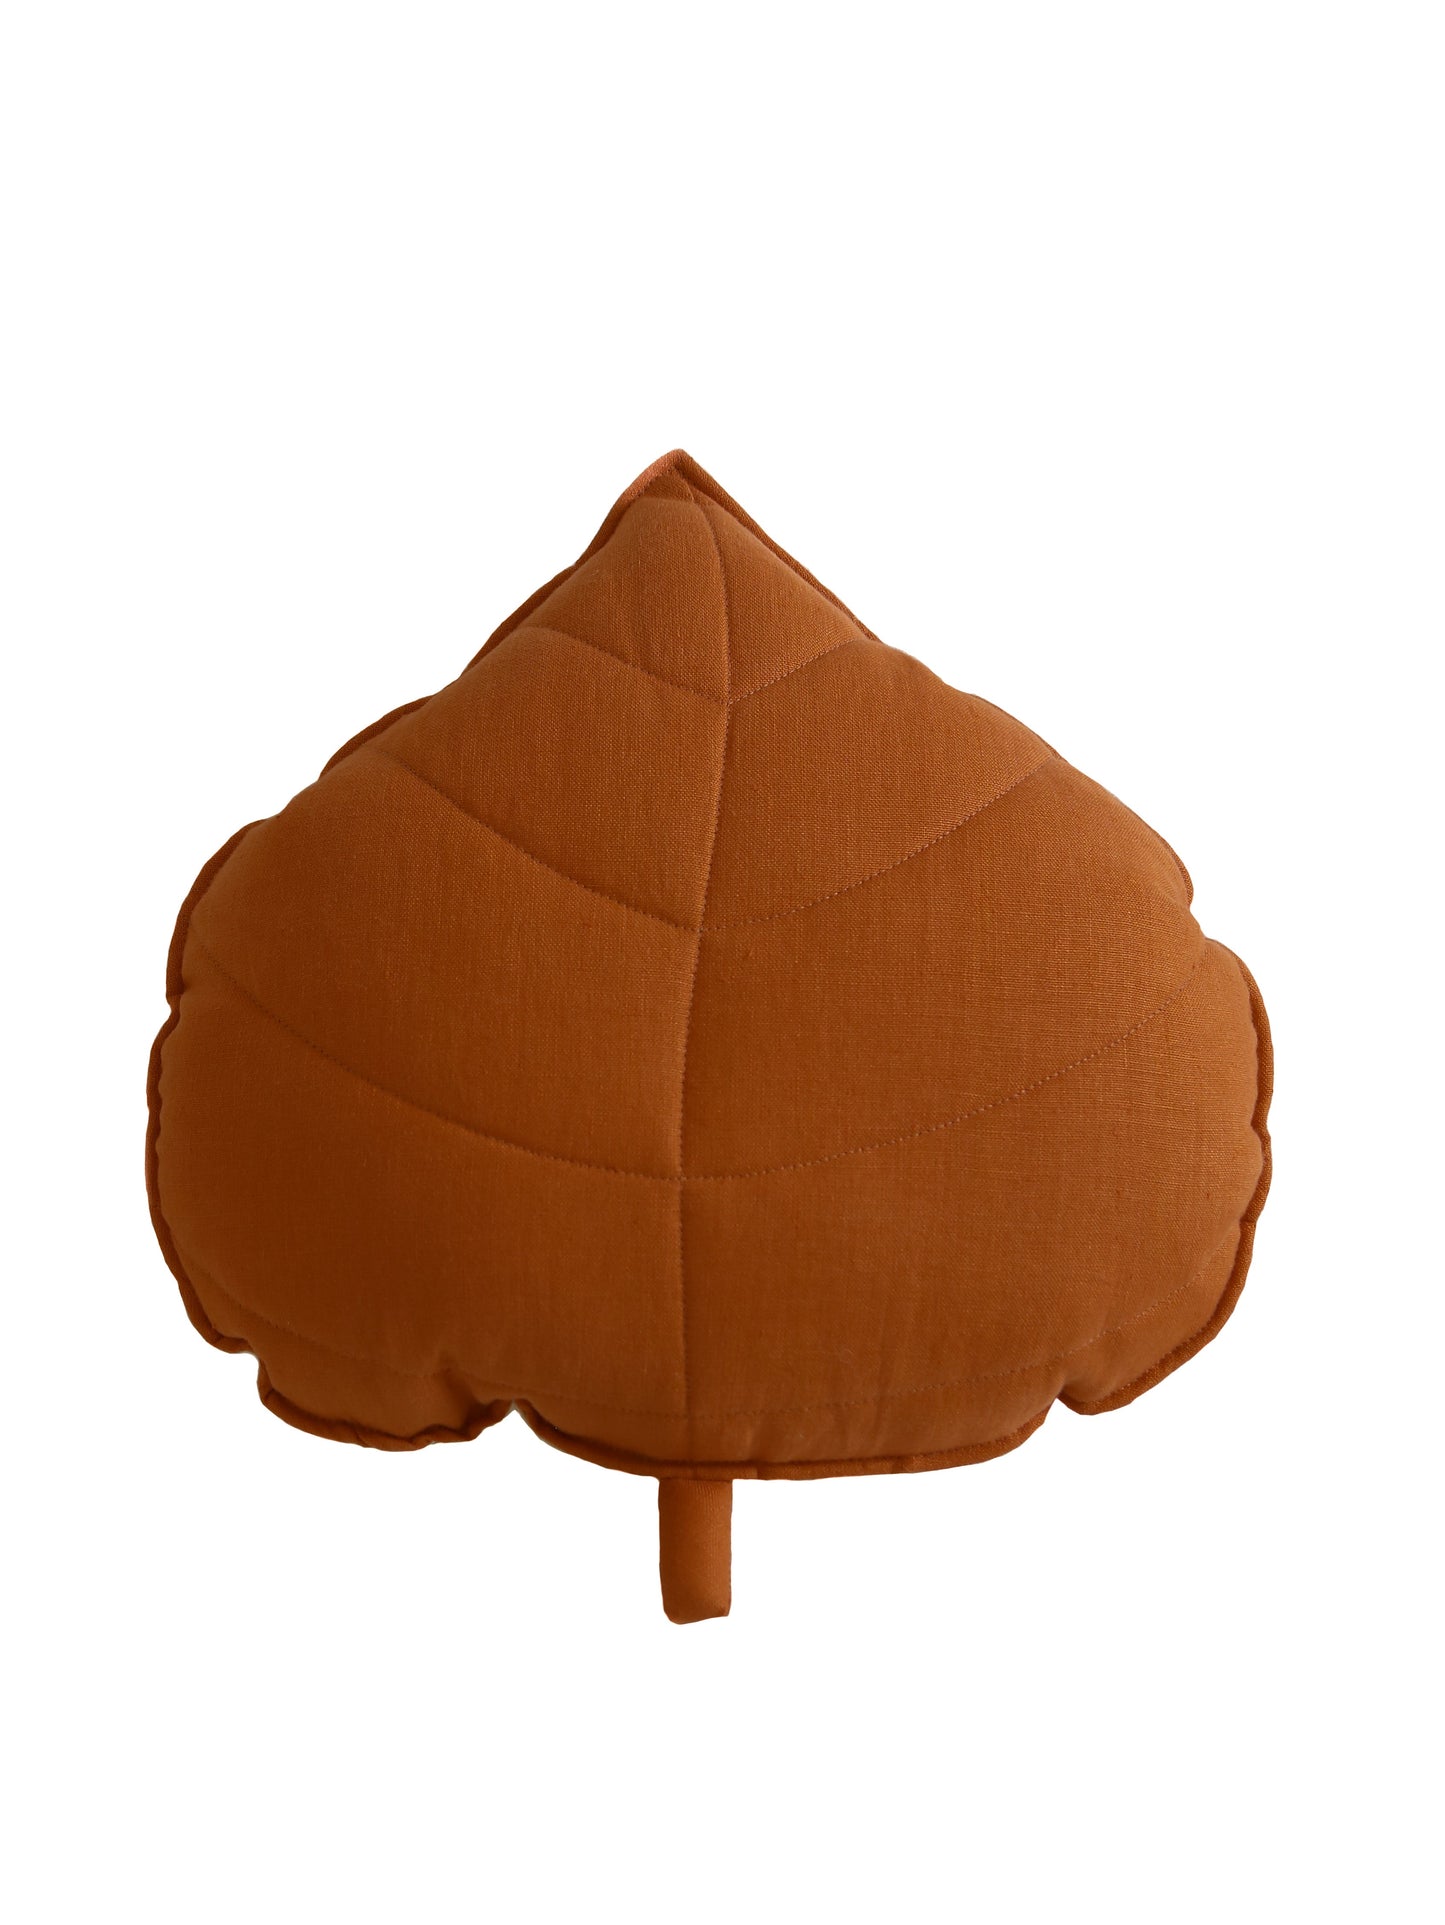 Linen “Caramel” Leaf Pillow